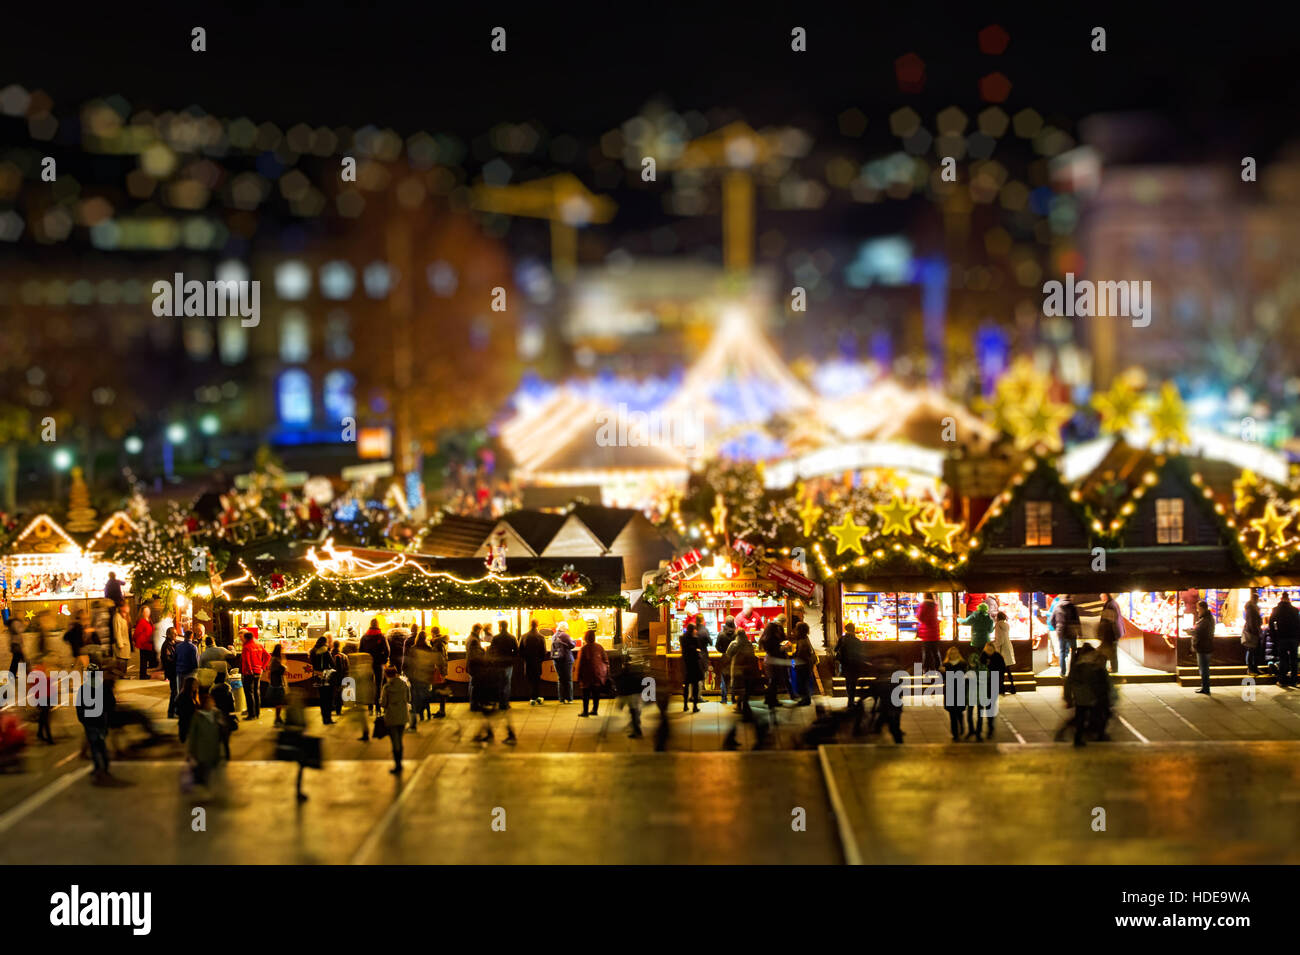 Christmas market in Stuttgart, Germany - Tilt shift effect Stock Photo